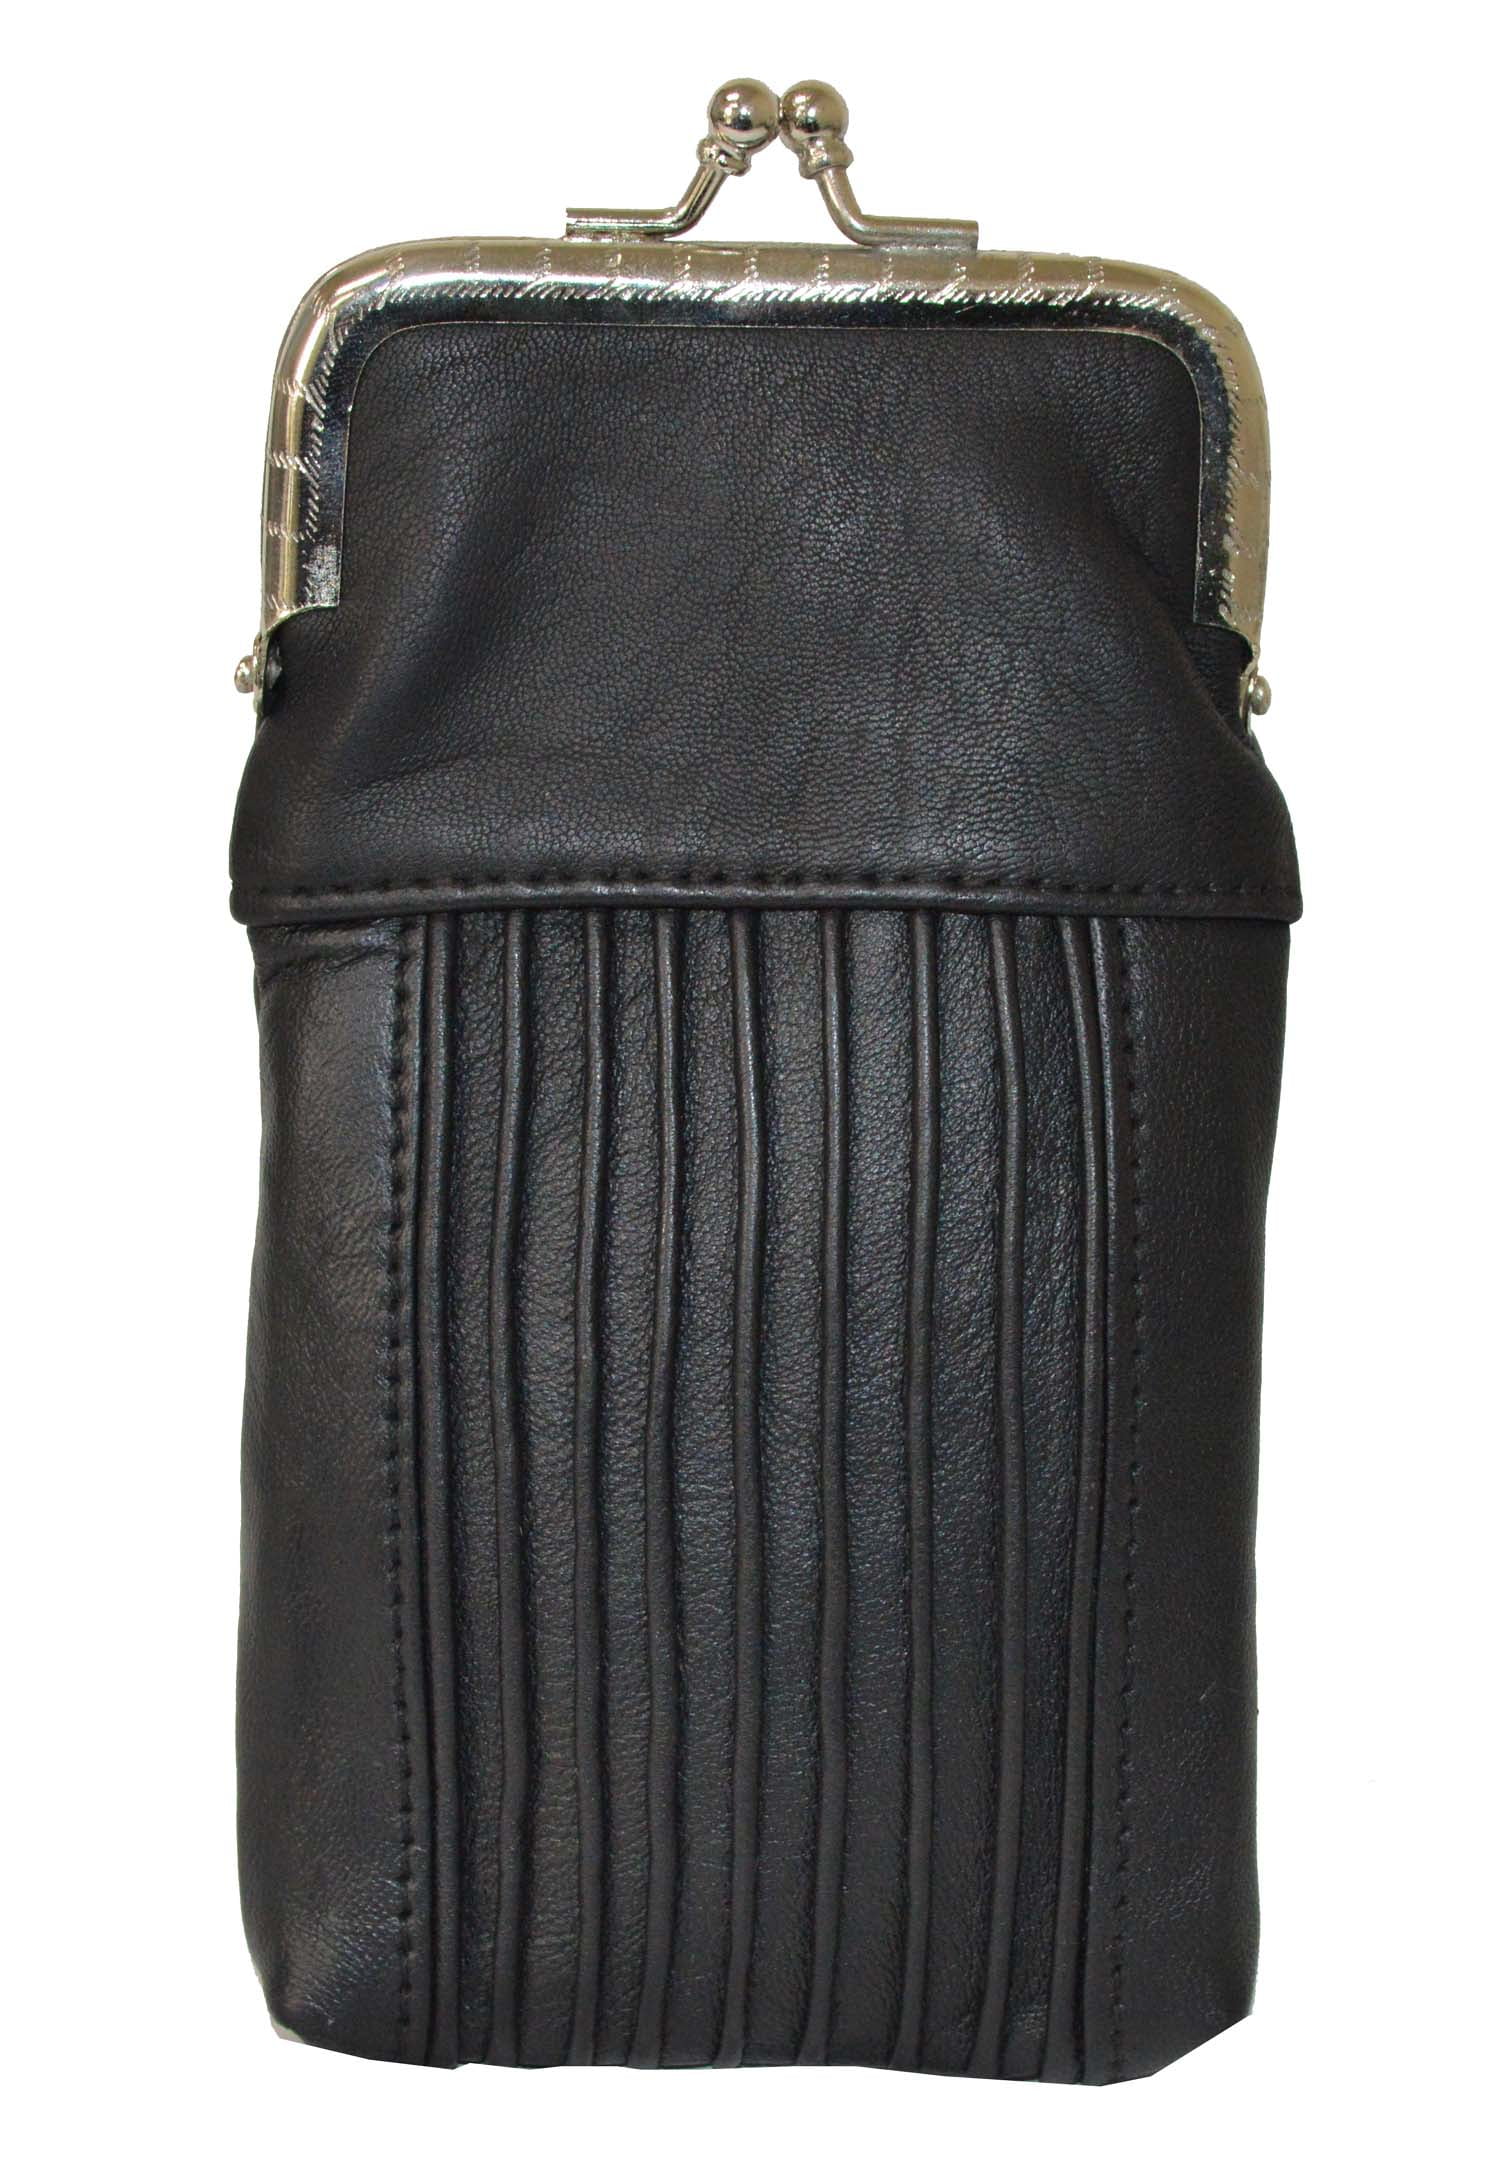 Designer Leather Cigarette Case Pack Holder Regular or 100's Lighter ...